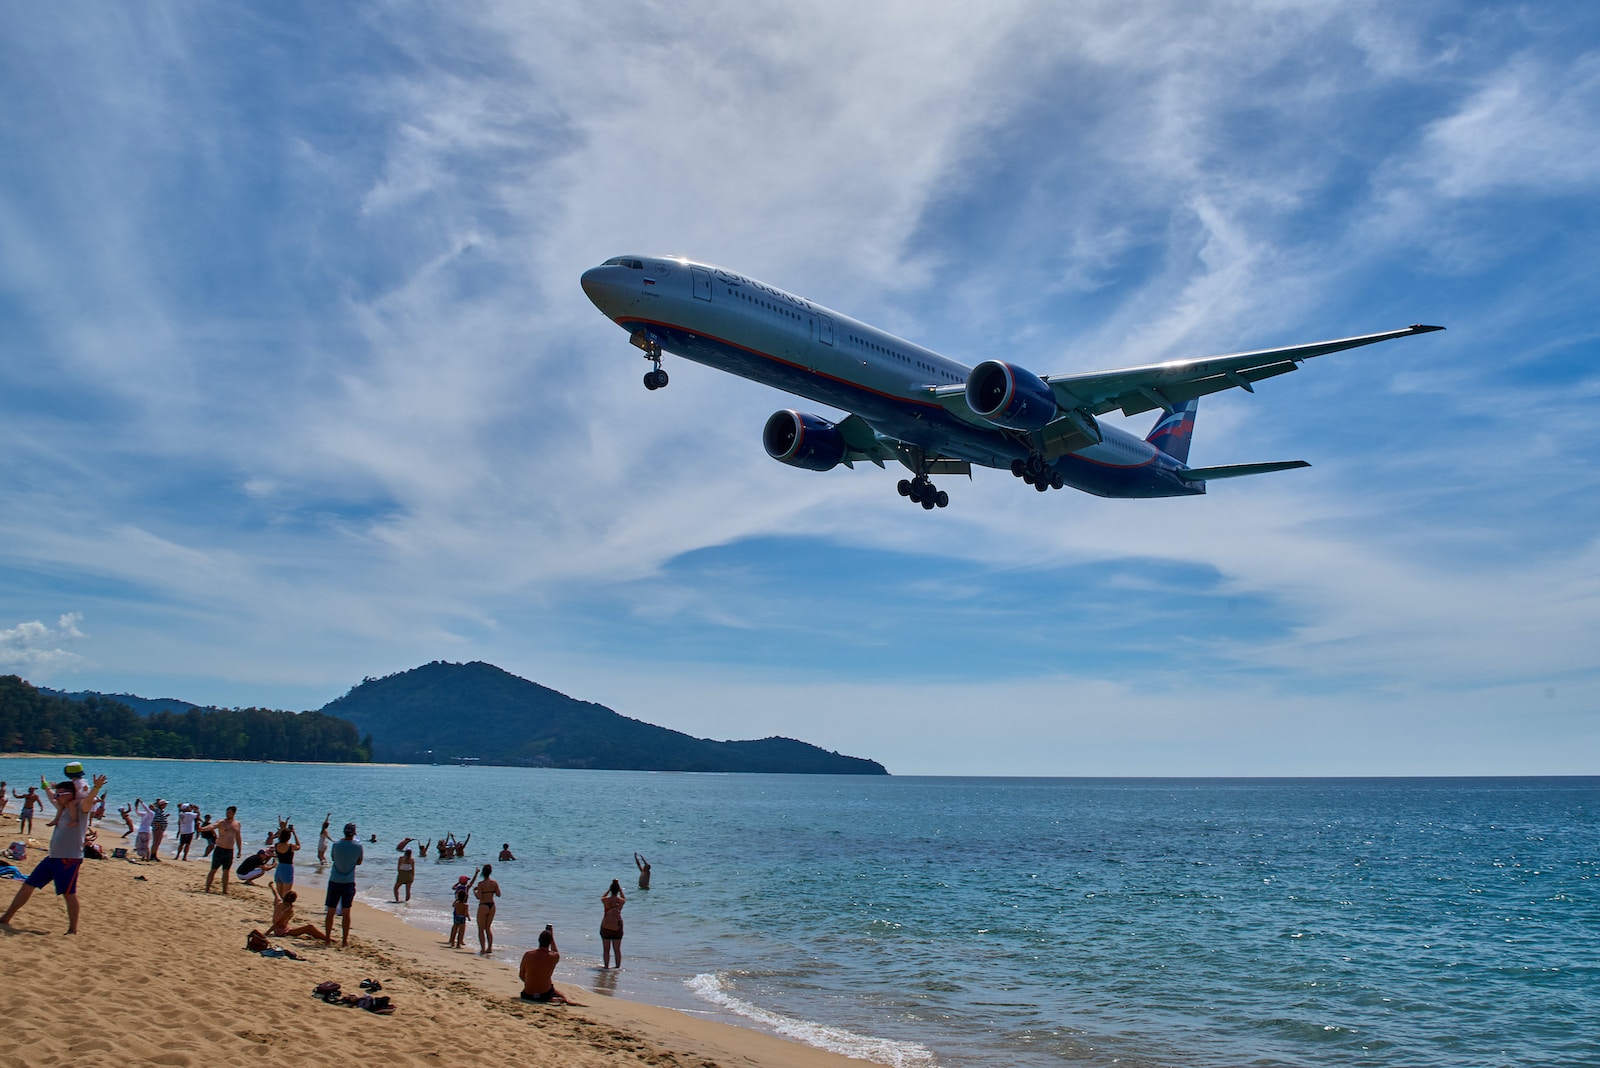 12. La plage de l'aéroport La plage devant l'aéroport de Phuket est un véritable spectacle - certainement pour les observateurs d'avions et tous ceux qui sont fascinés par les avions.